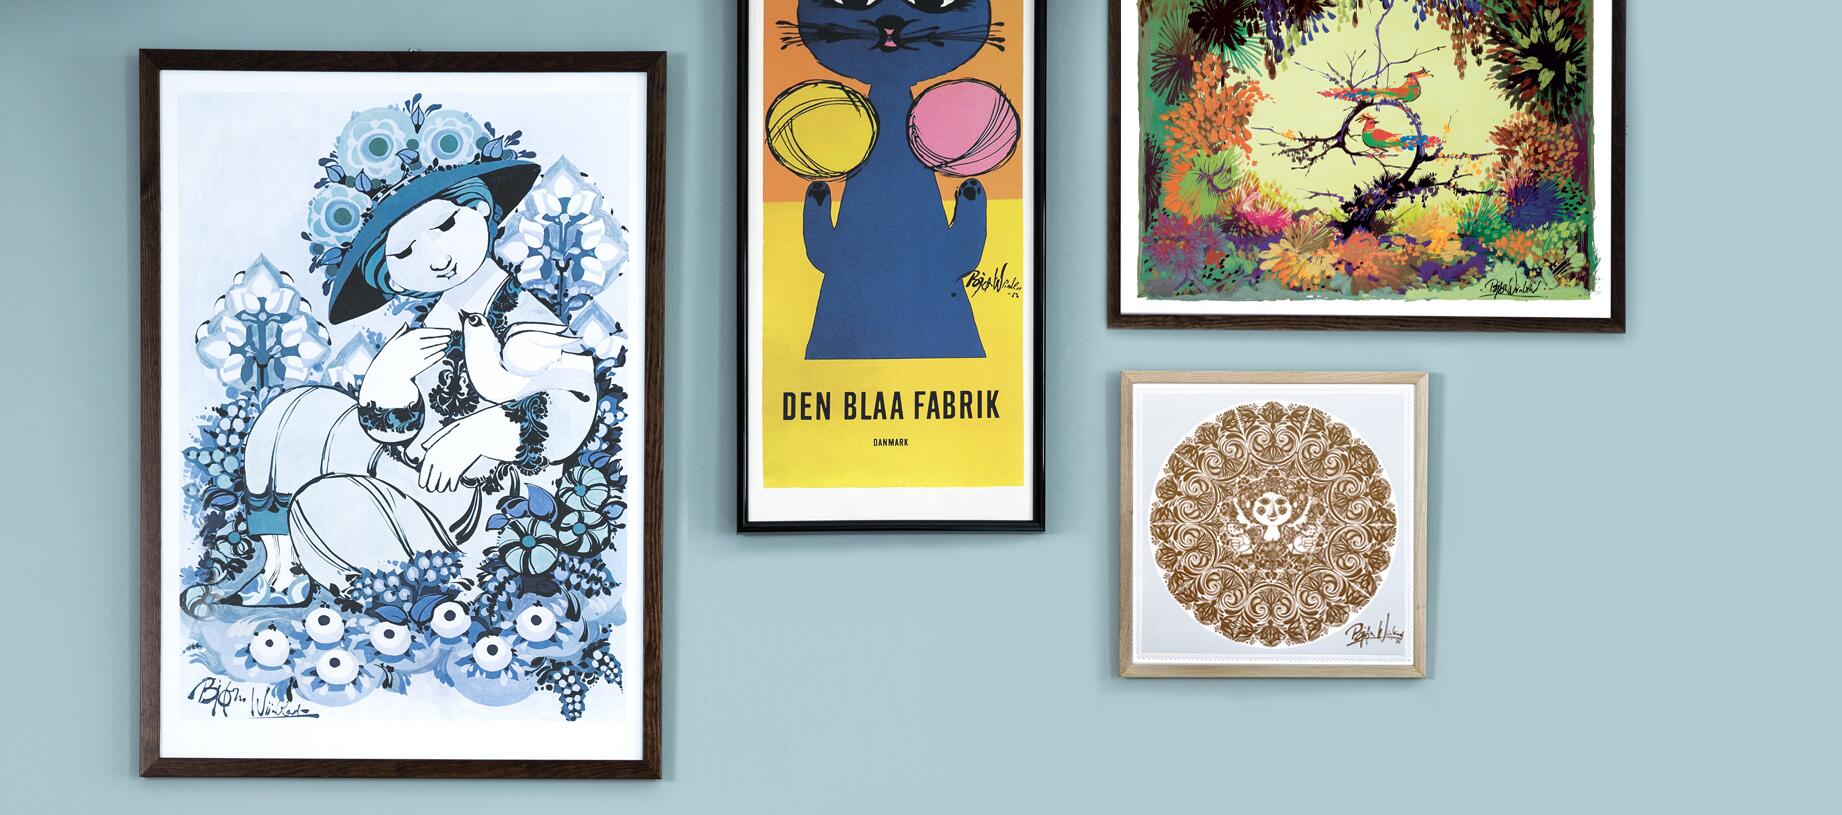 Bjørn Wiinblad plakater i forskellige farver og motiver.